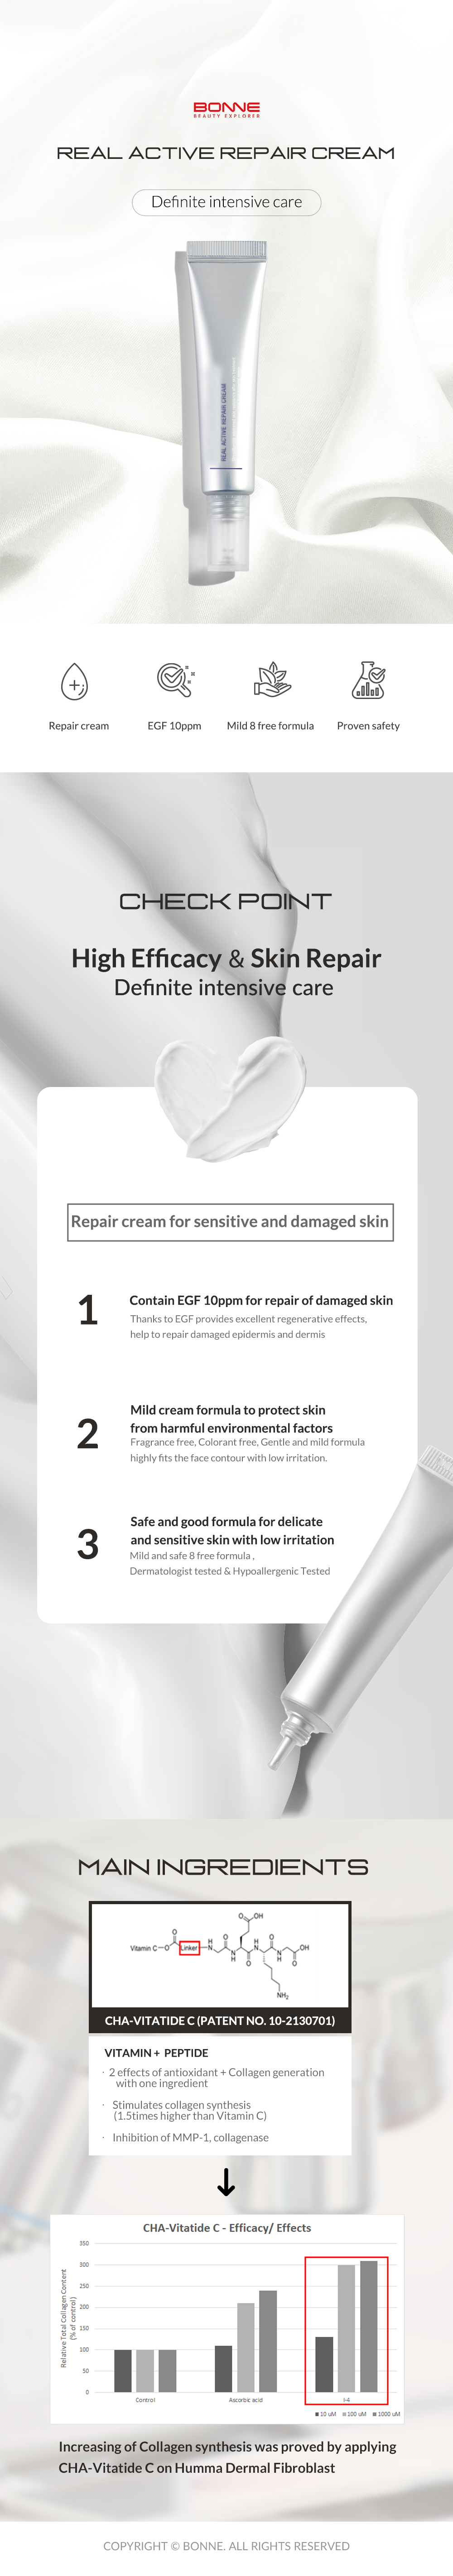 Real Active Repair Cream - Bonne